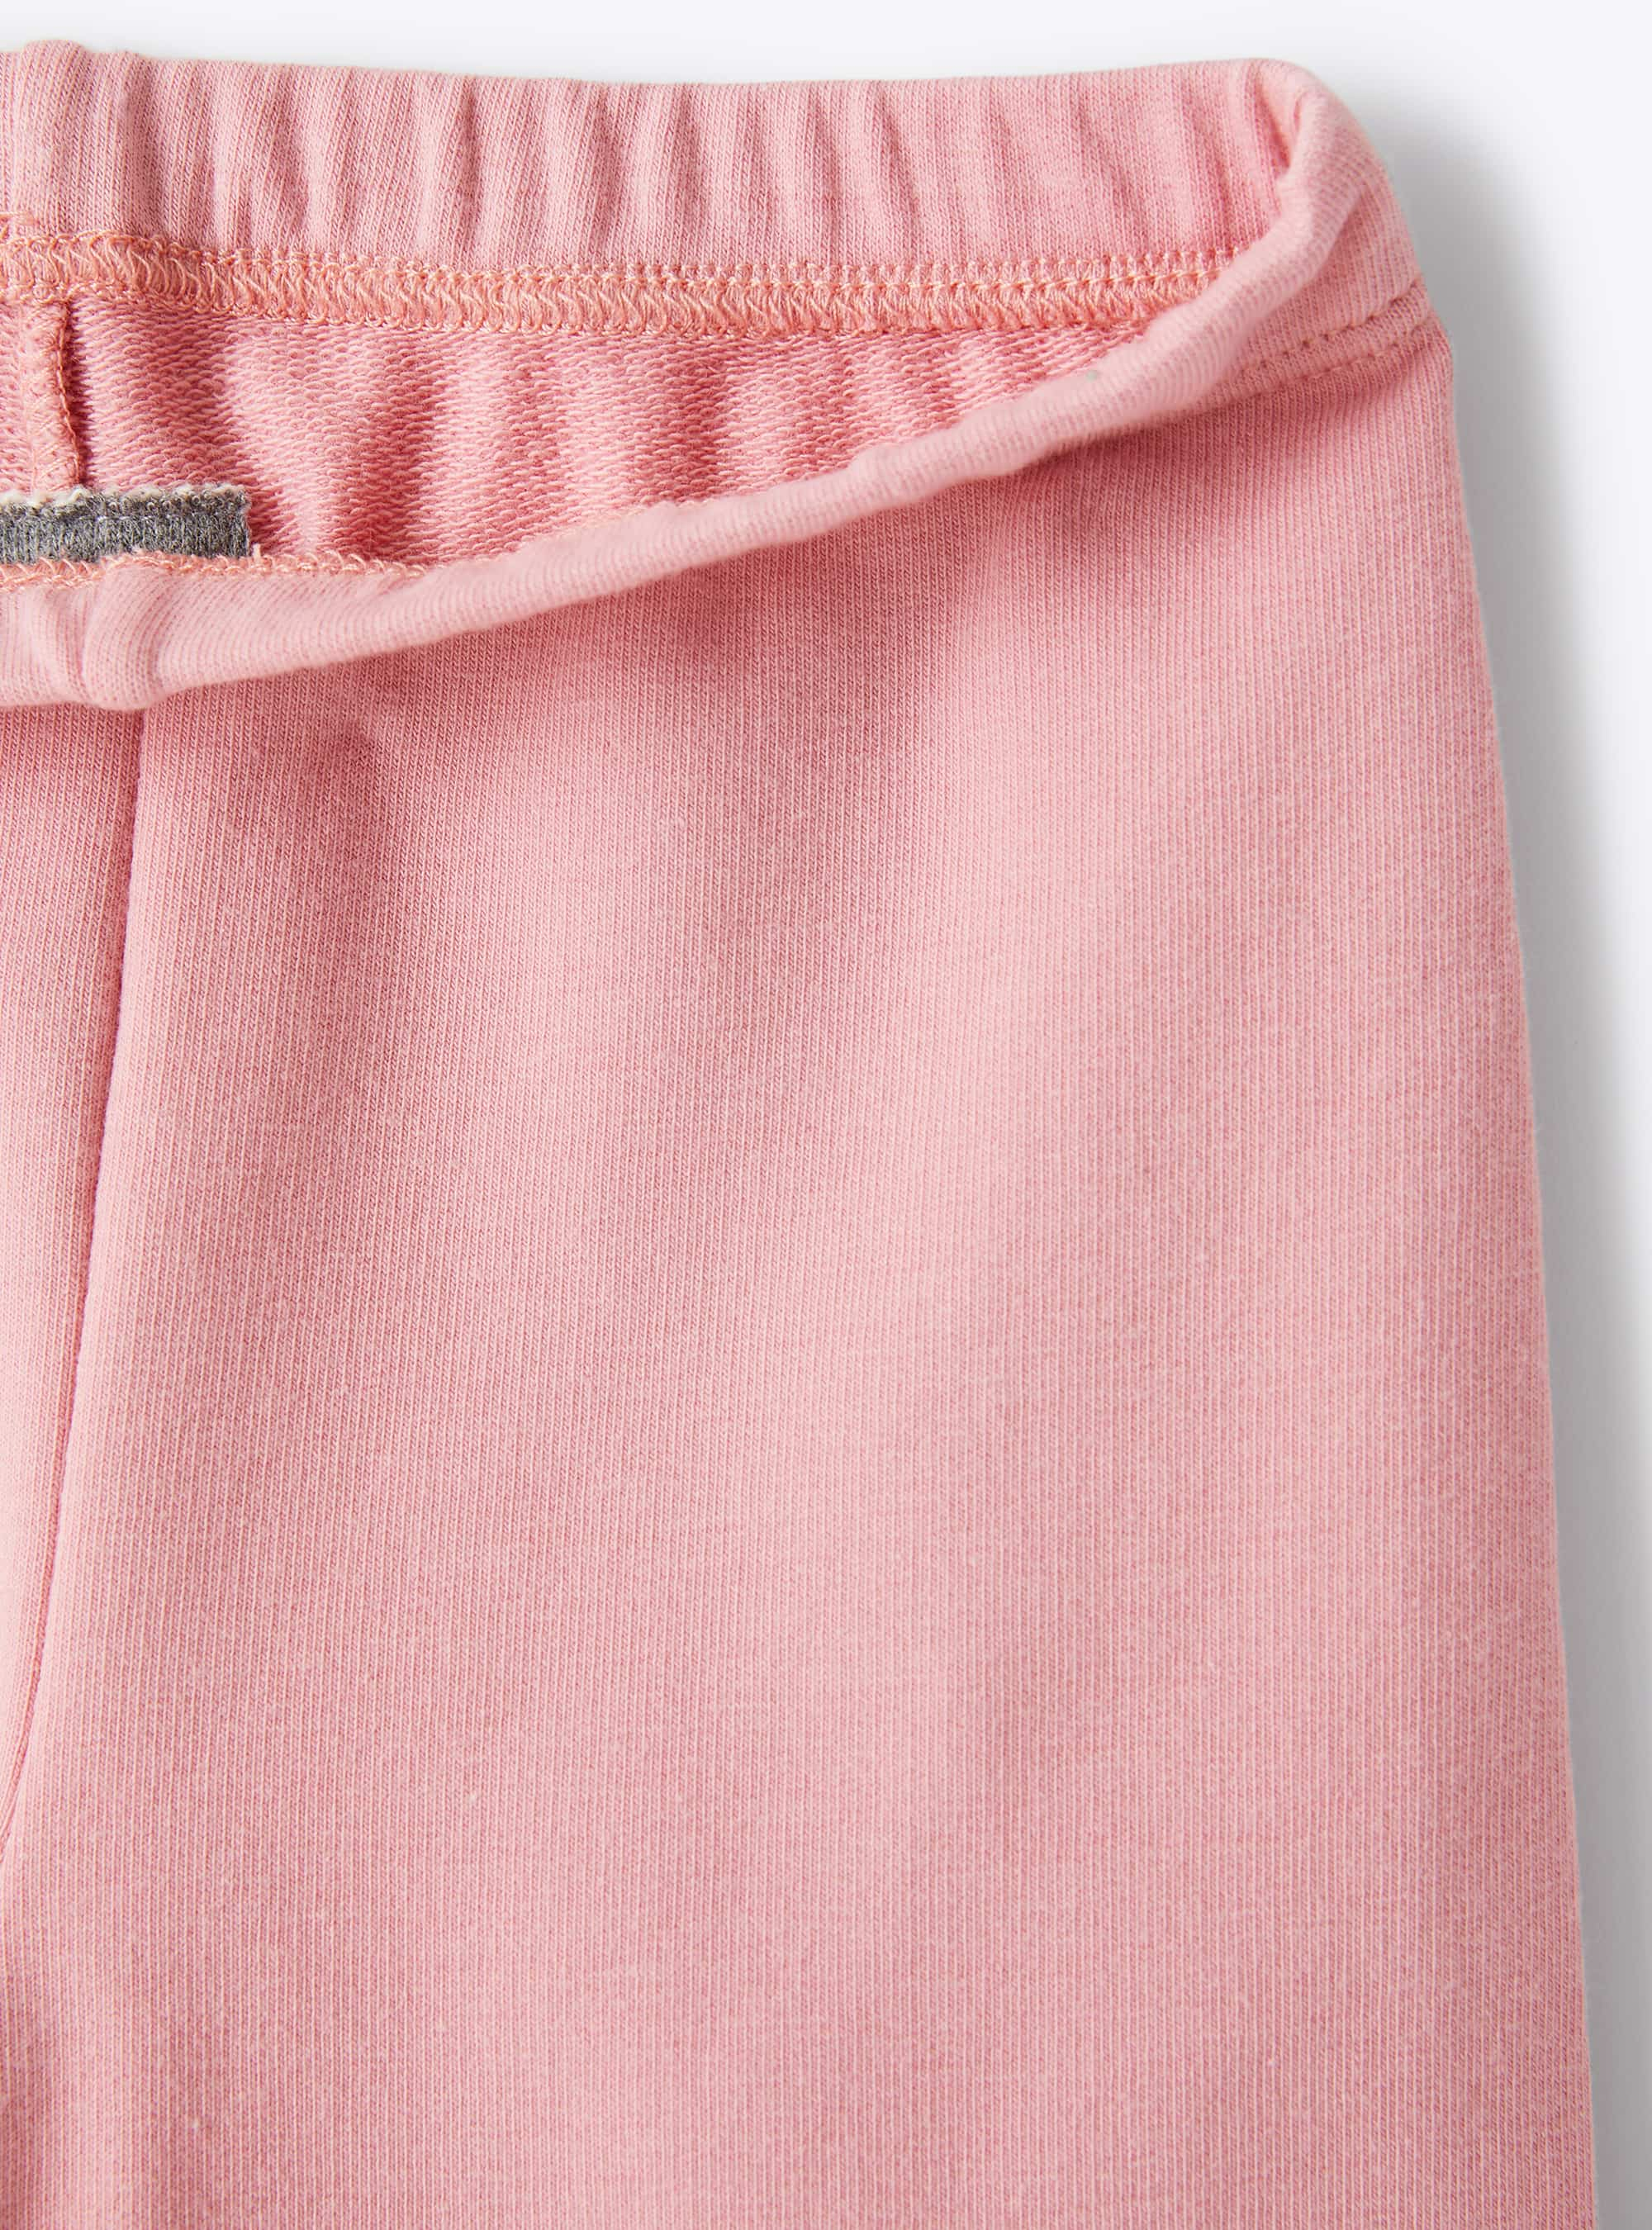 Pink fleece leggings - Pink | Il Gufo